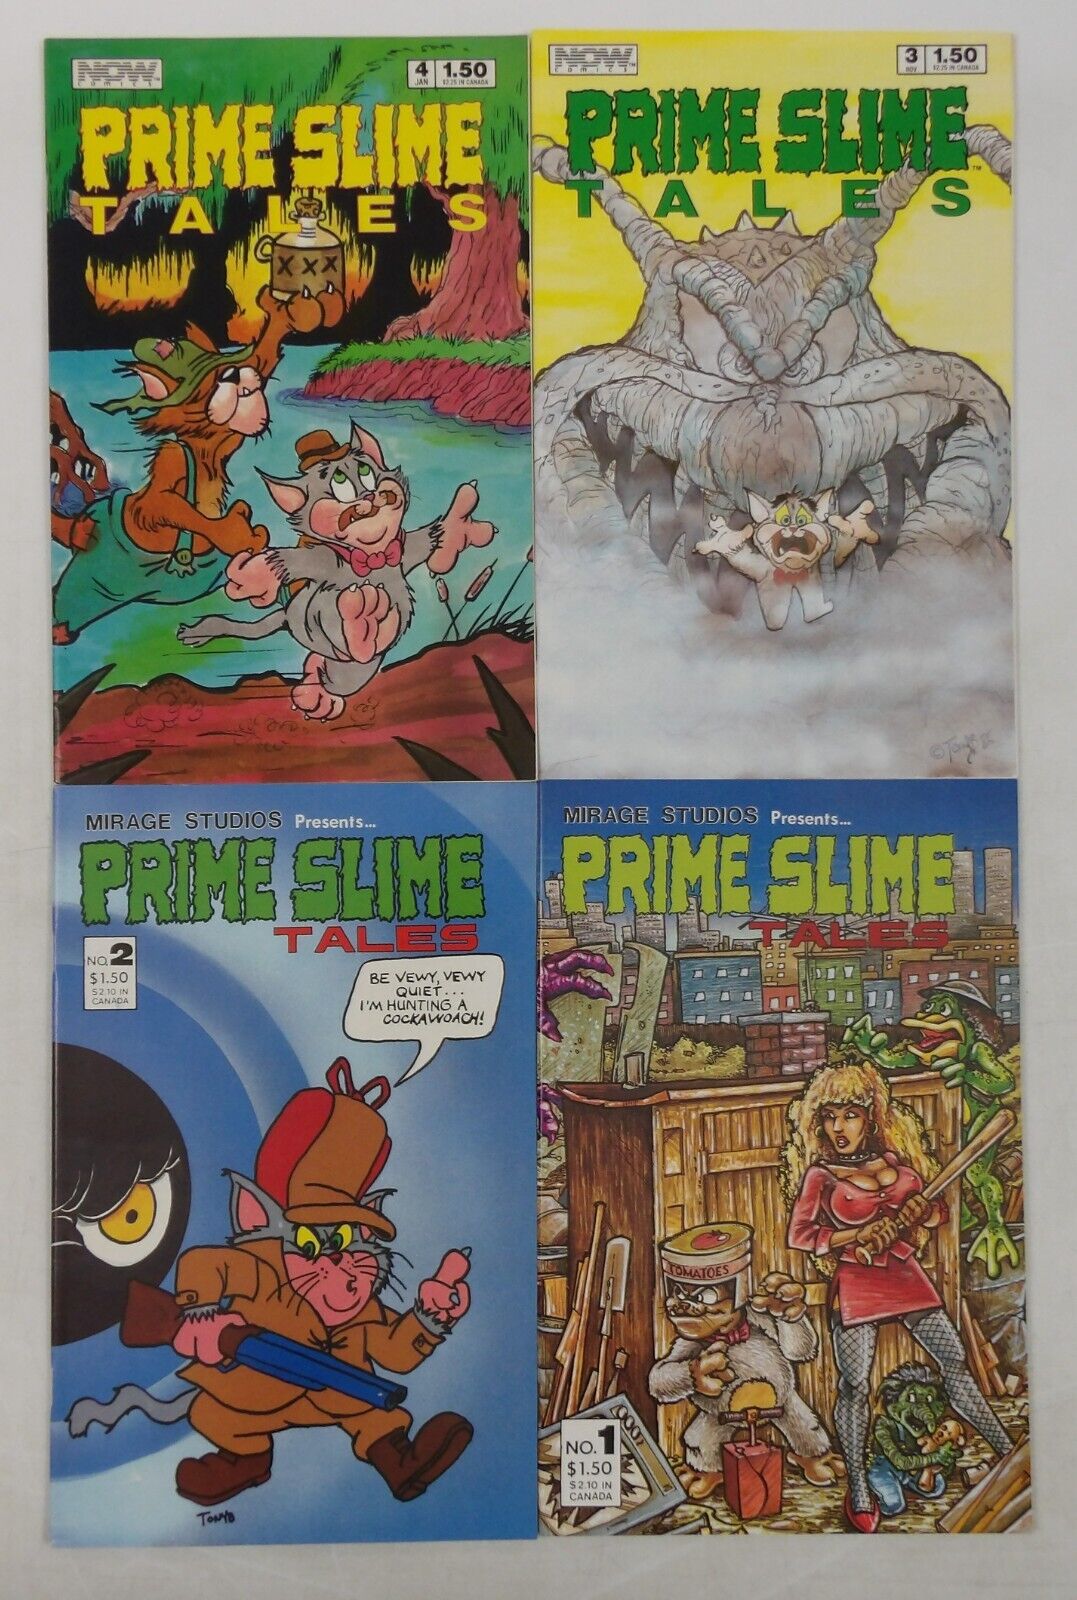 Prime Slime Tales #1-4 VF/NM complete series - TMNT - Kevin Eastman & Laird set